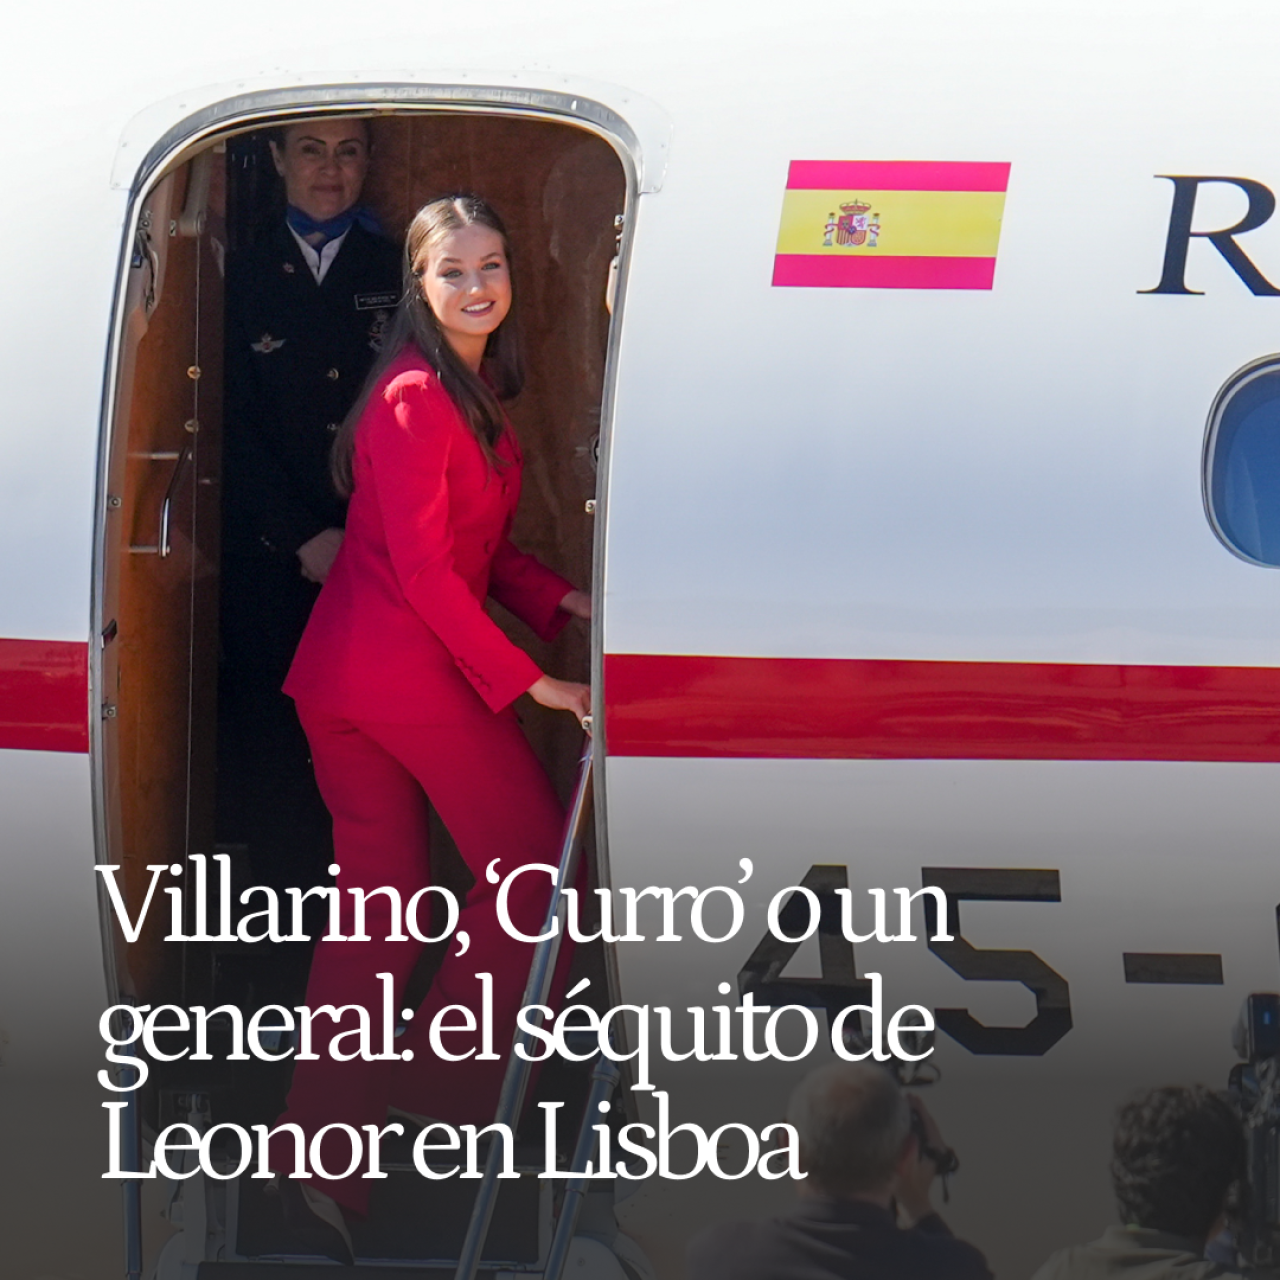 Camilo Villarino, 'Curro' o el general Herráiz: el séquito de la princesa Leonor en su primer viaje en solitario fuera de España